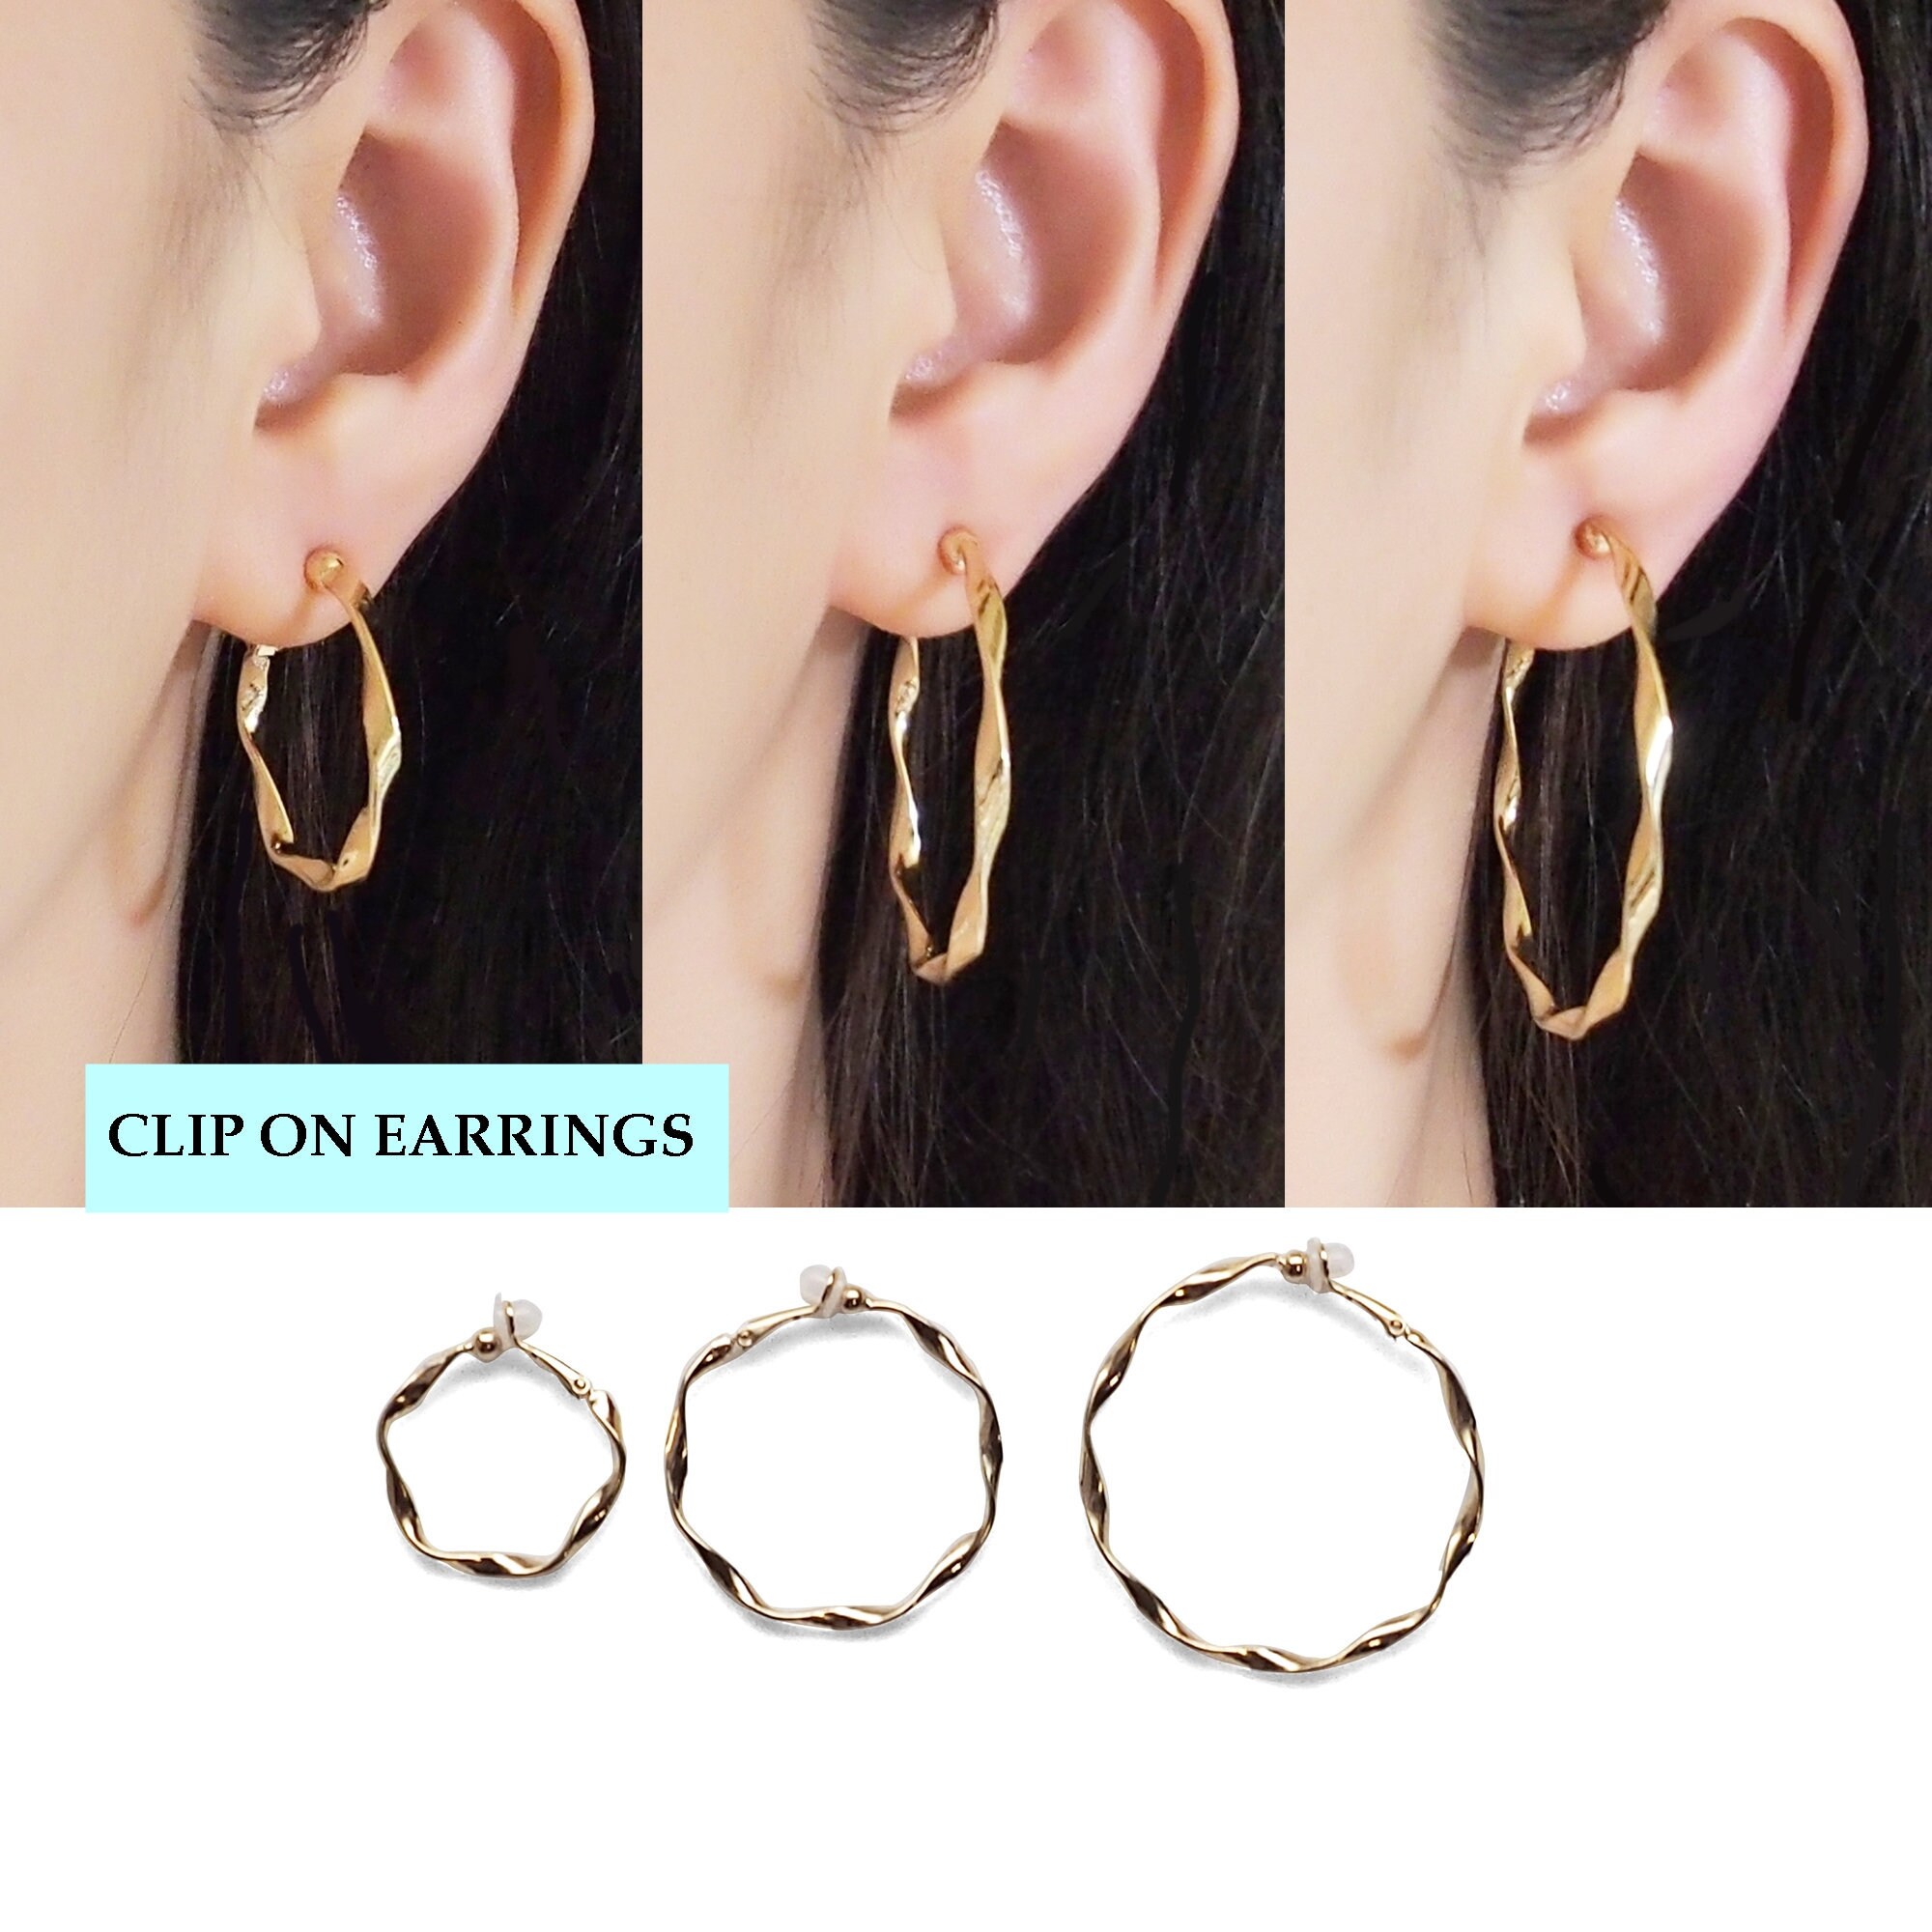 Clip en pendientes falsos Joyería Pendientes Pendientes de clip aros para las orejas solo use sin orejas perforadas pendientes de oro de 6 cm de 60 mm de diámetro 